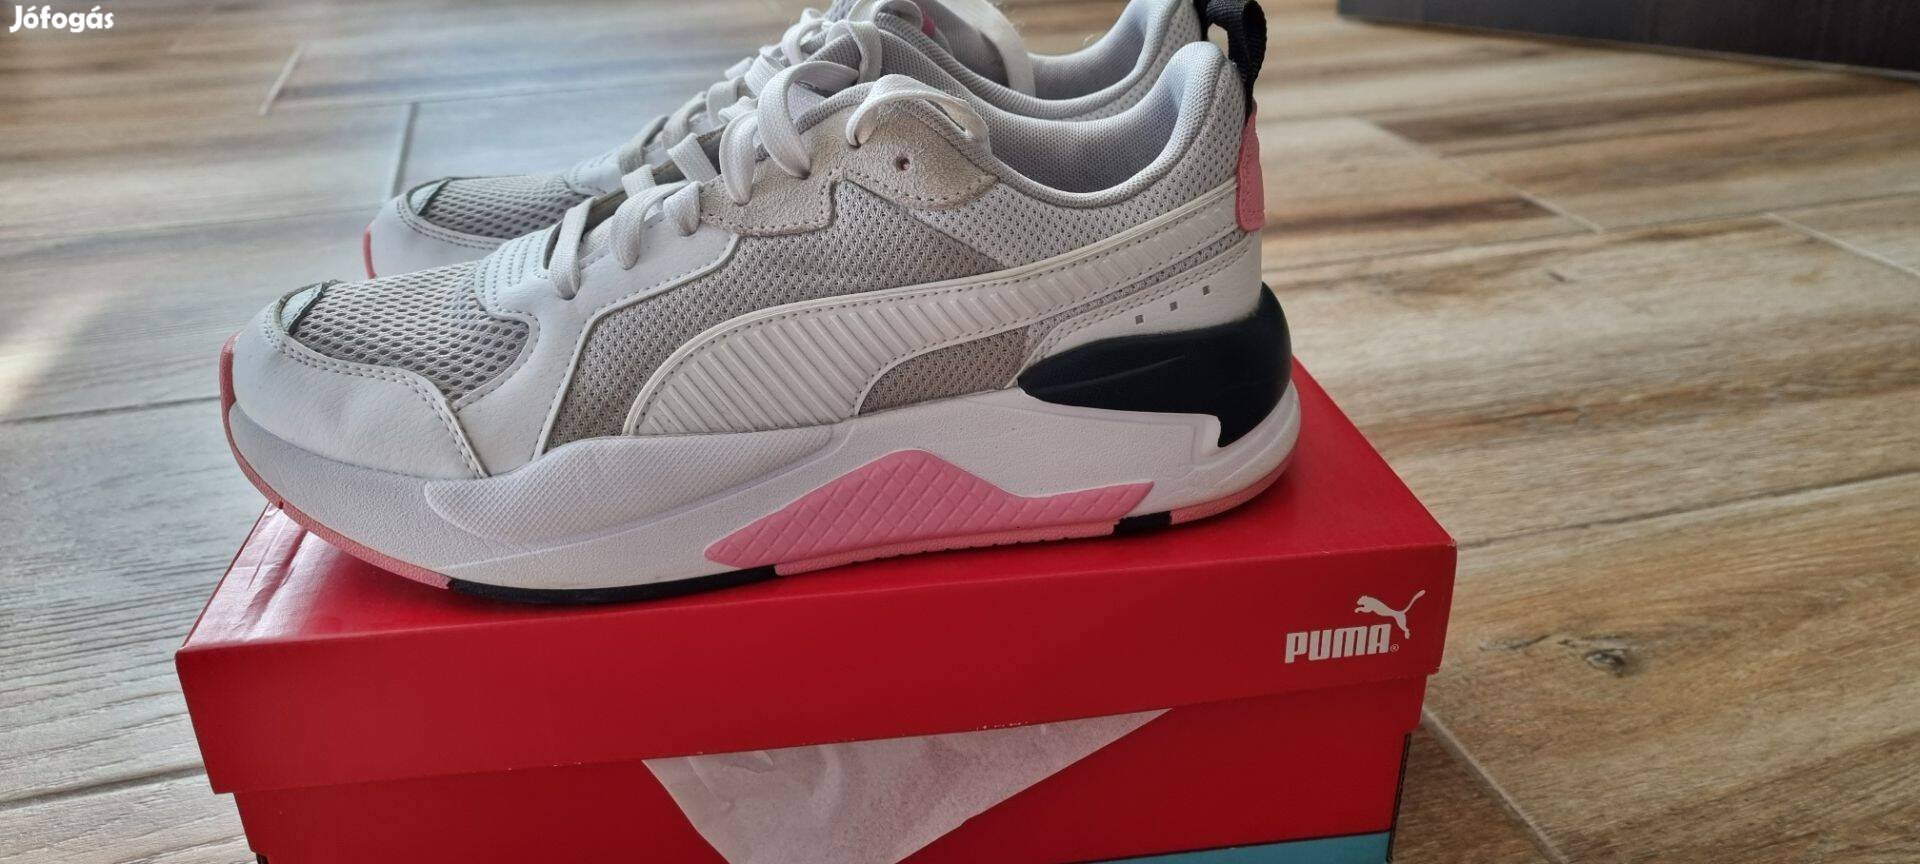 Puma cipő 39-es, eredeti